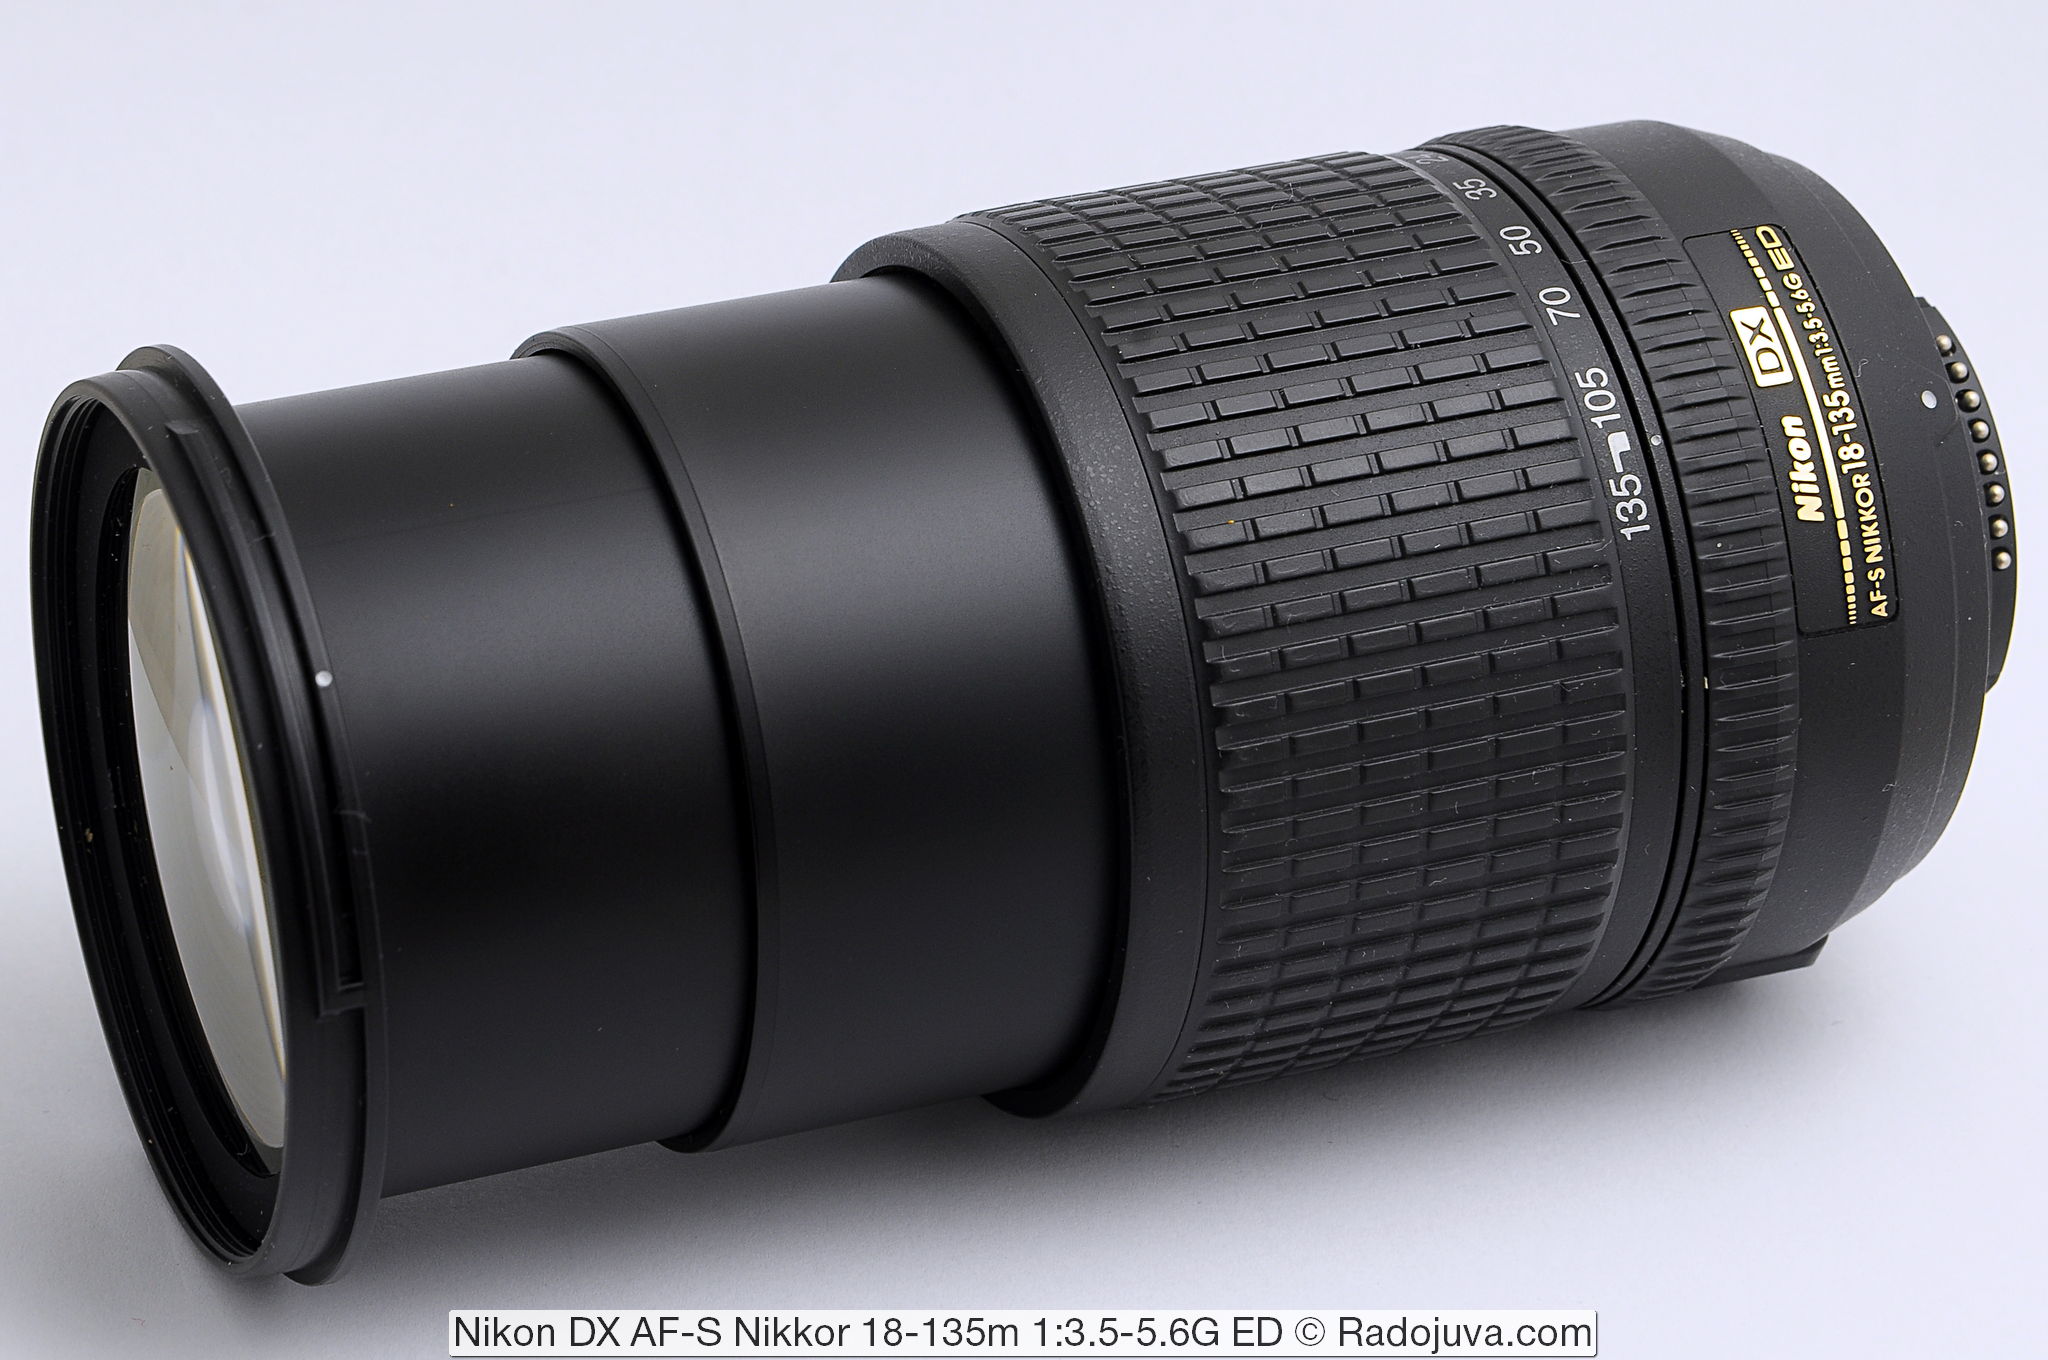 Nikon DX AF-S Nikkor 18-135m 1:3.5-5.6G ED SWM IF Aspherical